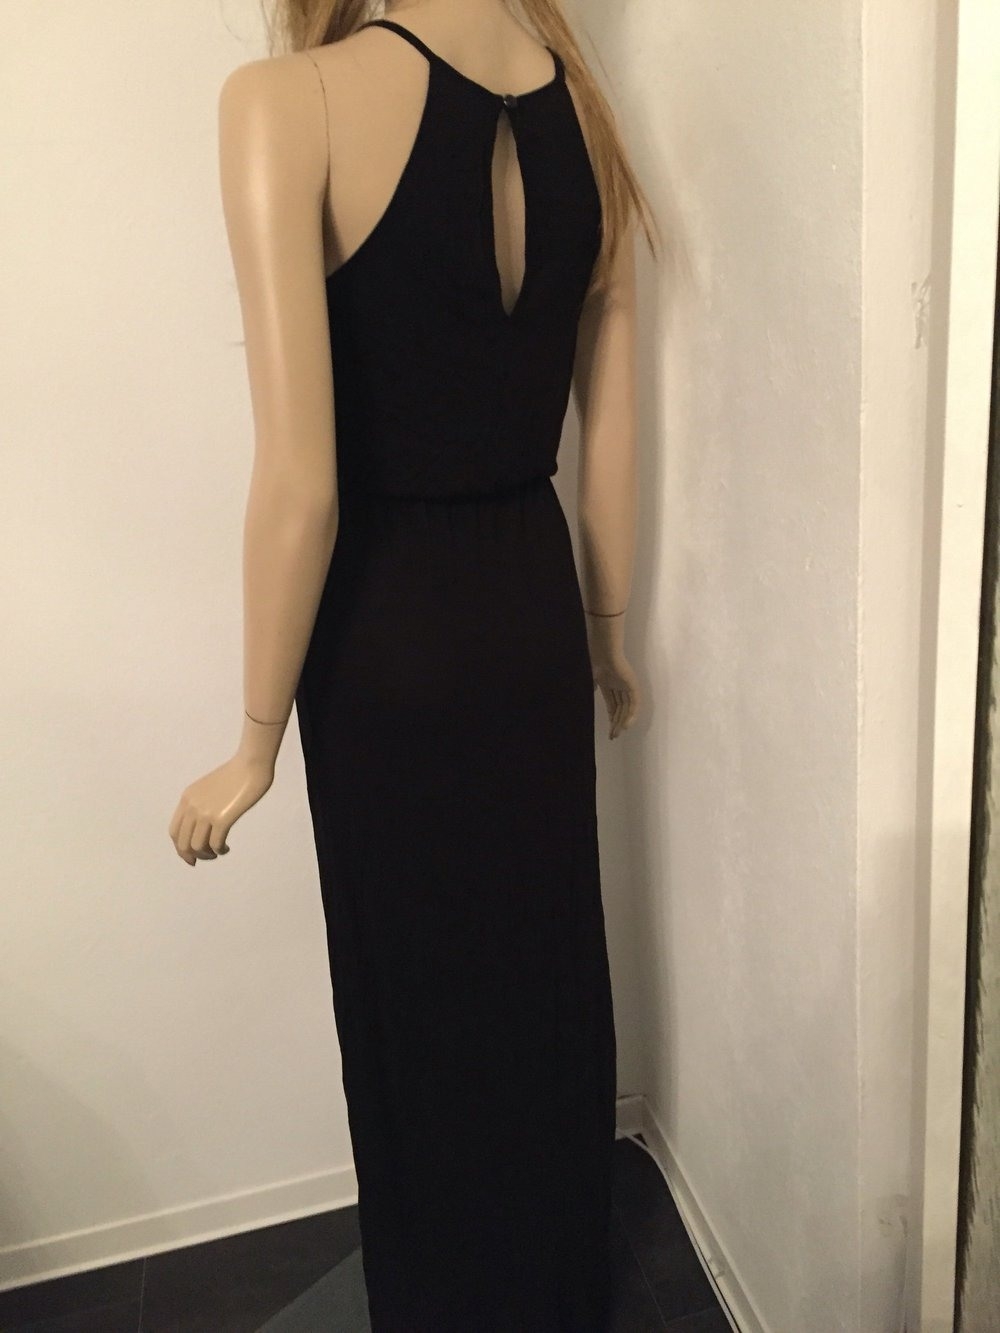 Abend Ausgezeichnet Schwarzes Langes Kleid Galerie20 Cool Schwarzes Langes Kleid Bester Preis